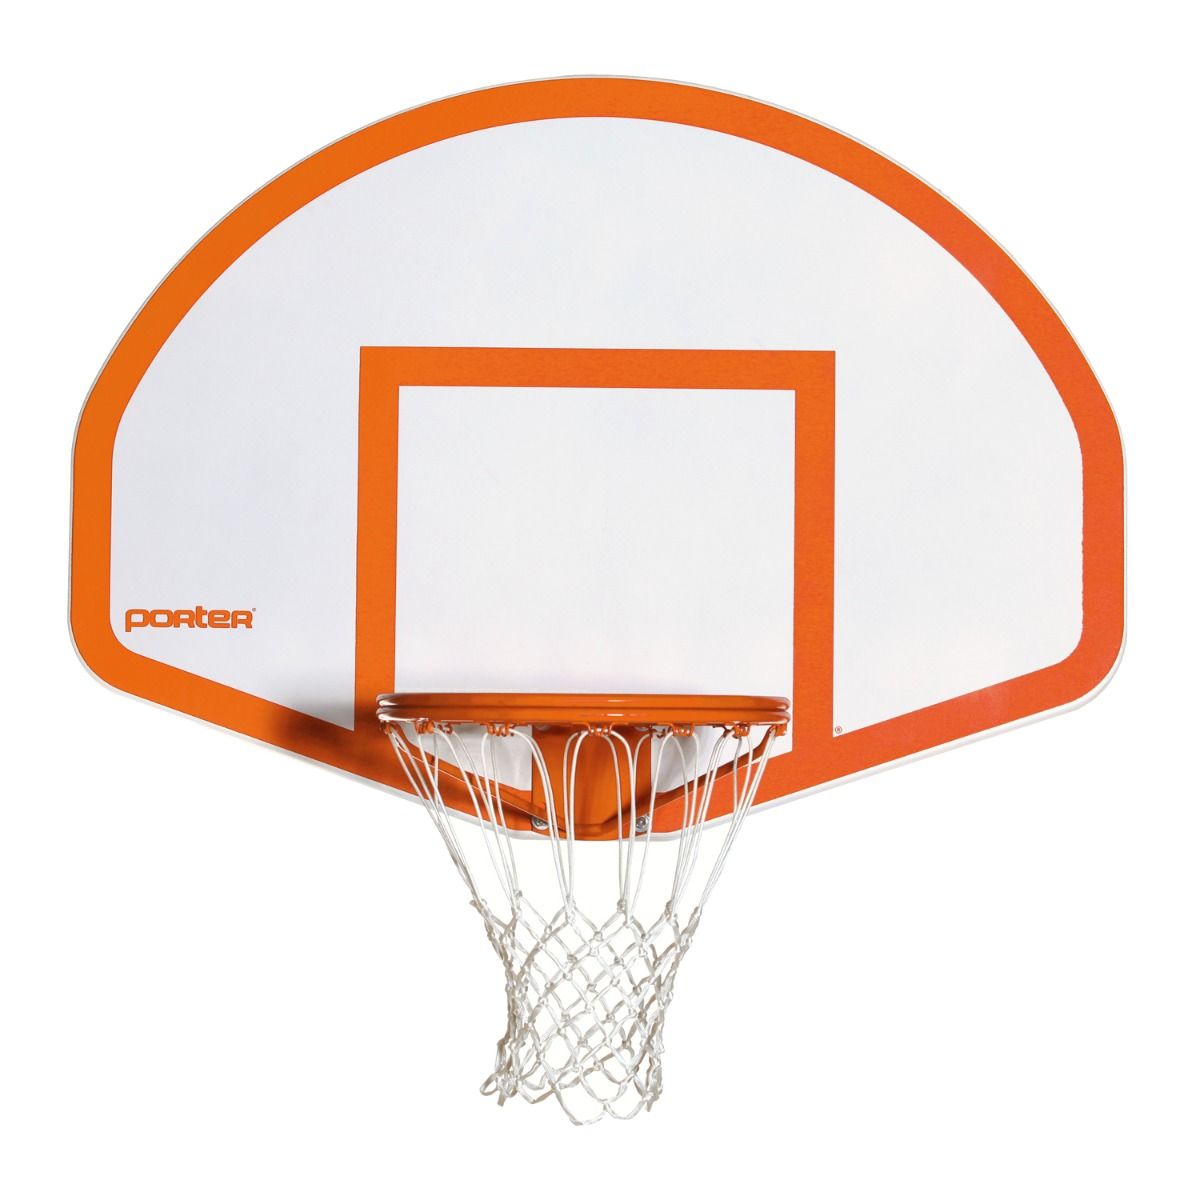 Cast Aluminum Fan-Shaped Basketball Outdoor Backboard